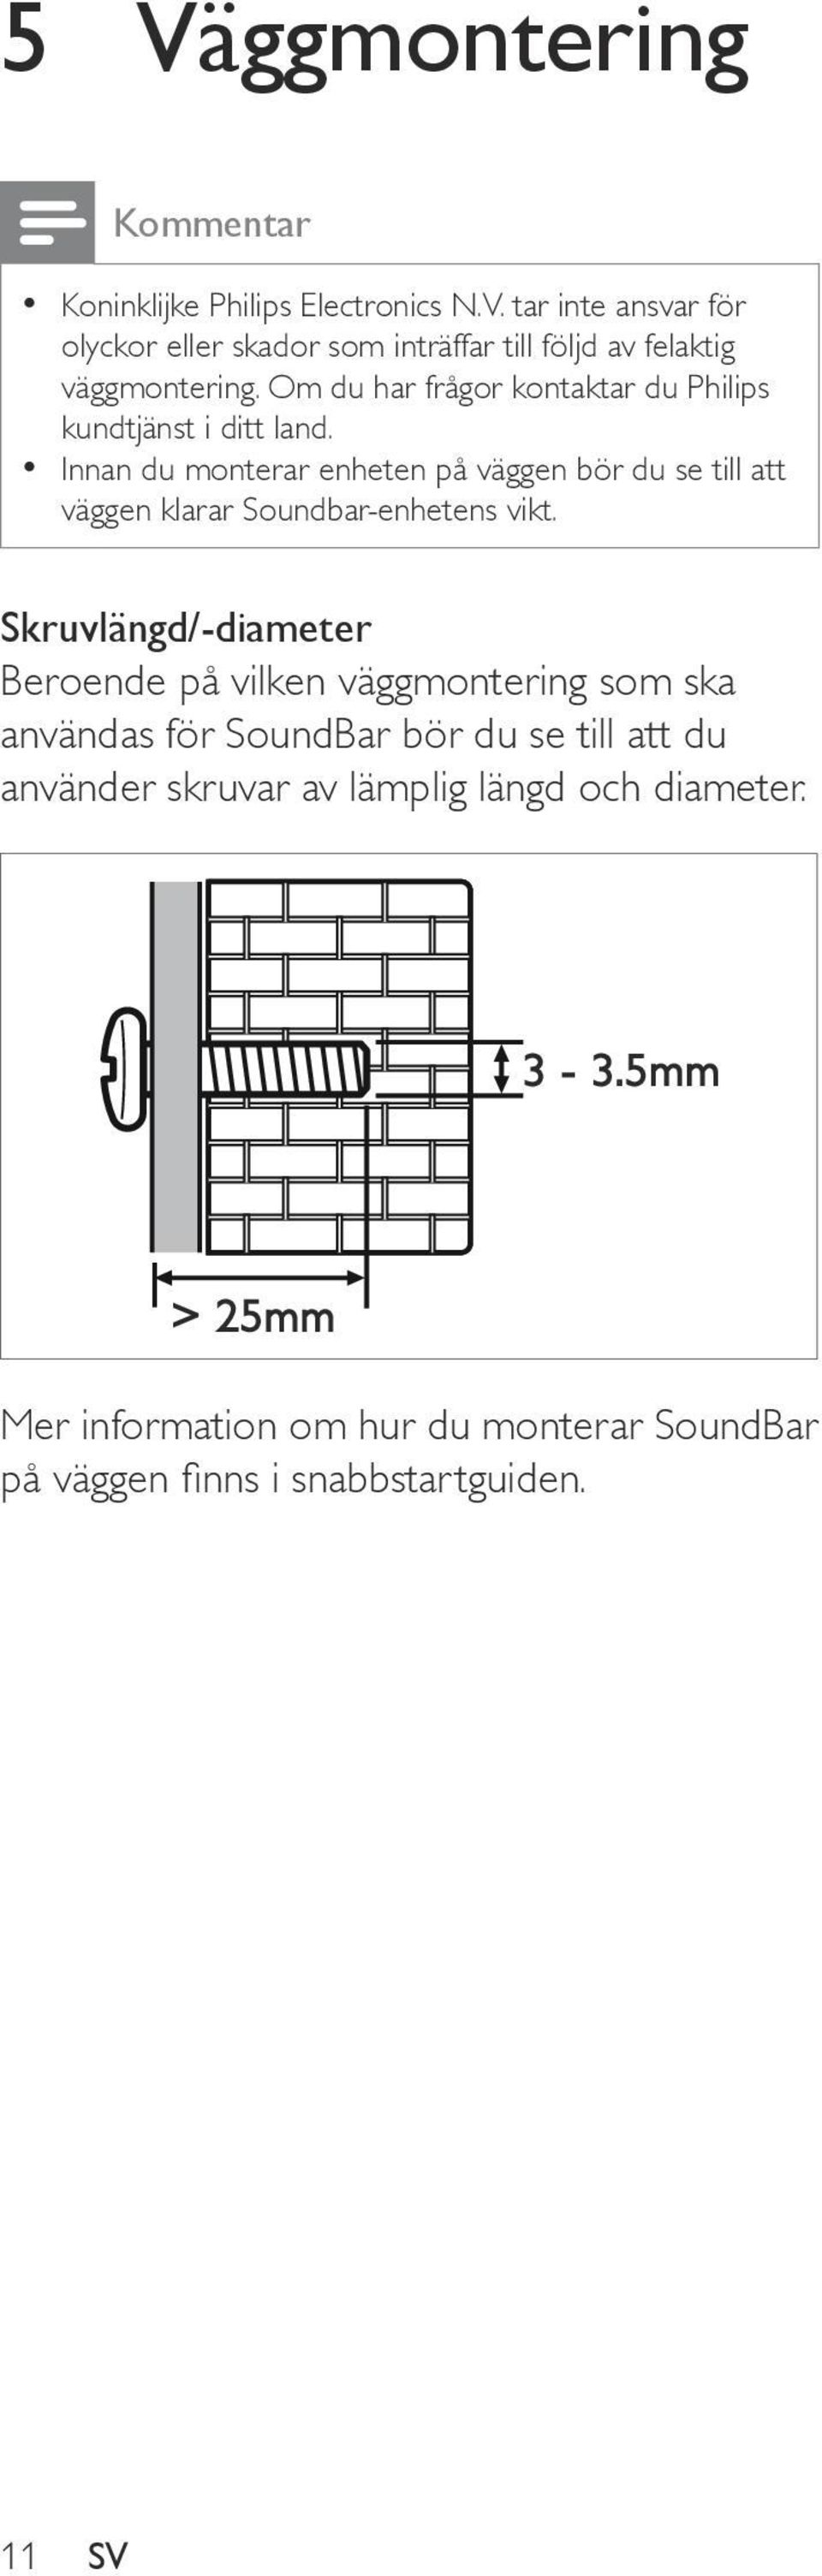 Innan du monterar enheten på väggen bör du se till att väggen klarar Soundbar-enhetens vikt.